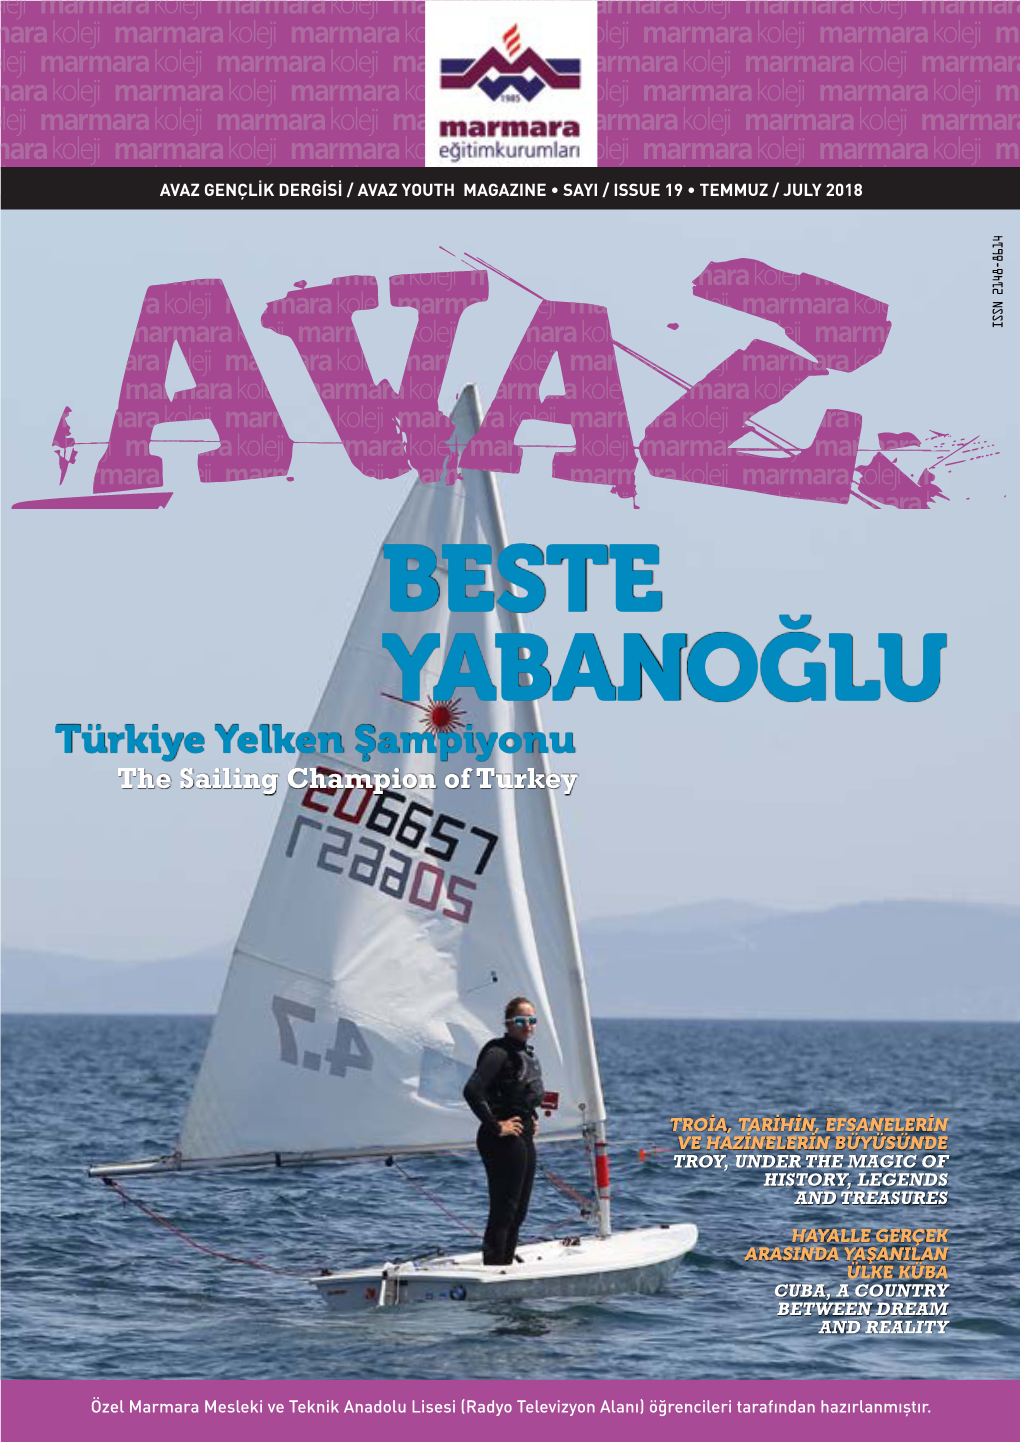 BESTE YABANOĞLU Türkiye Yelken Şampiyonu the Sailing Champion of Turkey